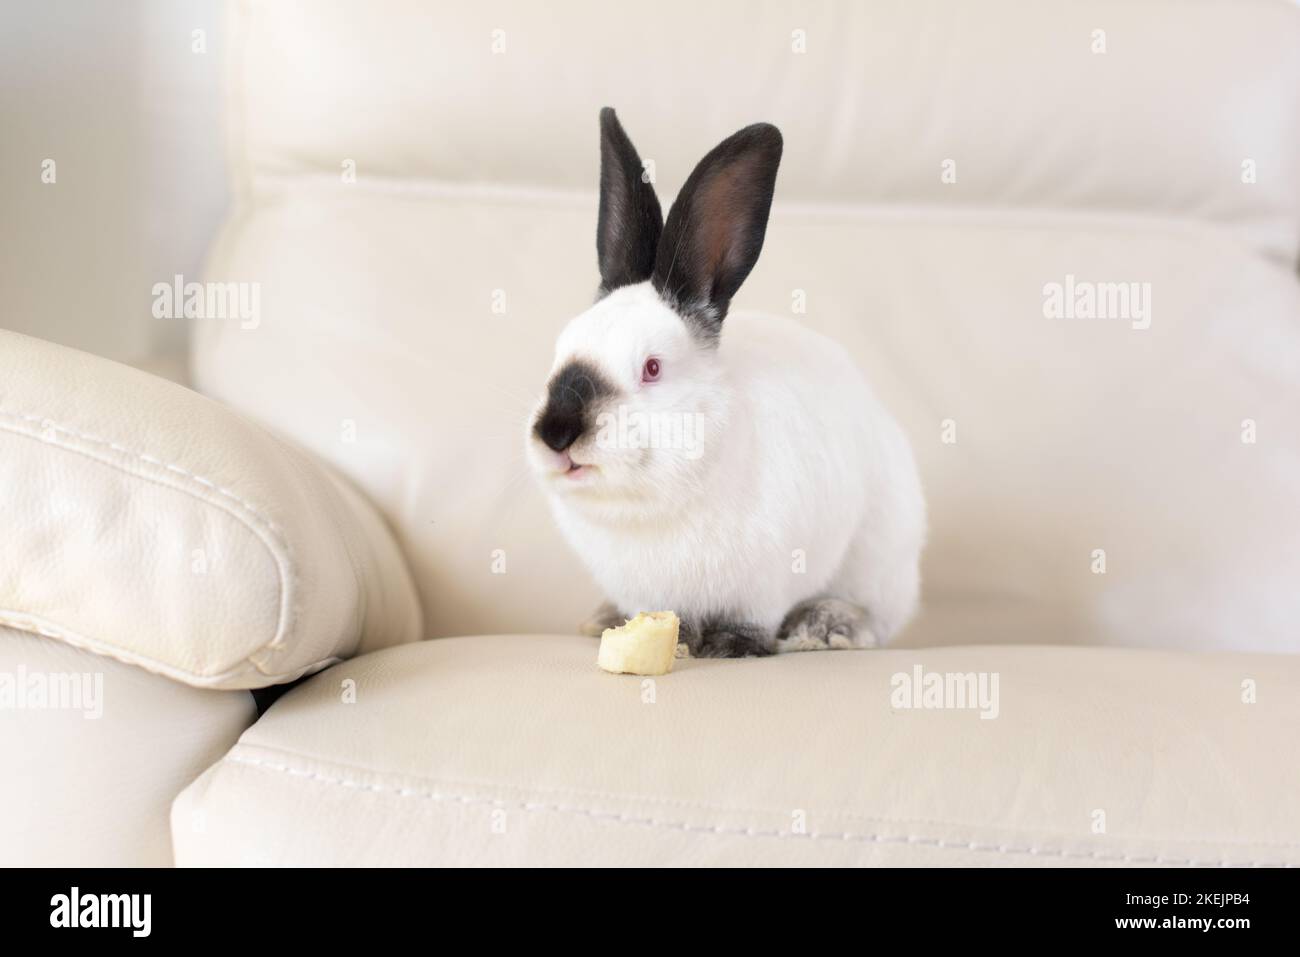 Ein weißes Kaninchen mit roten Augen und schwarzen Ohren sitzt auf einem weißen Ledersofaende und isst Banane - Osterhase Stockfoto